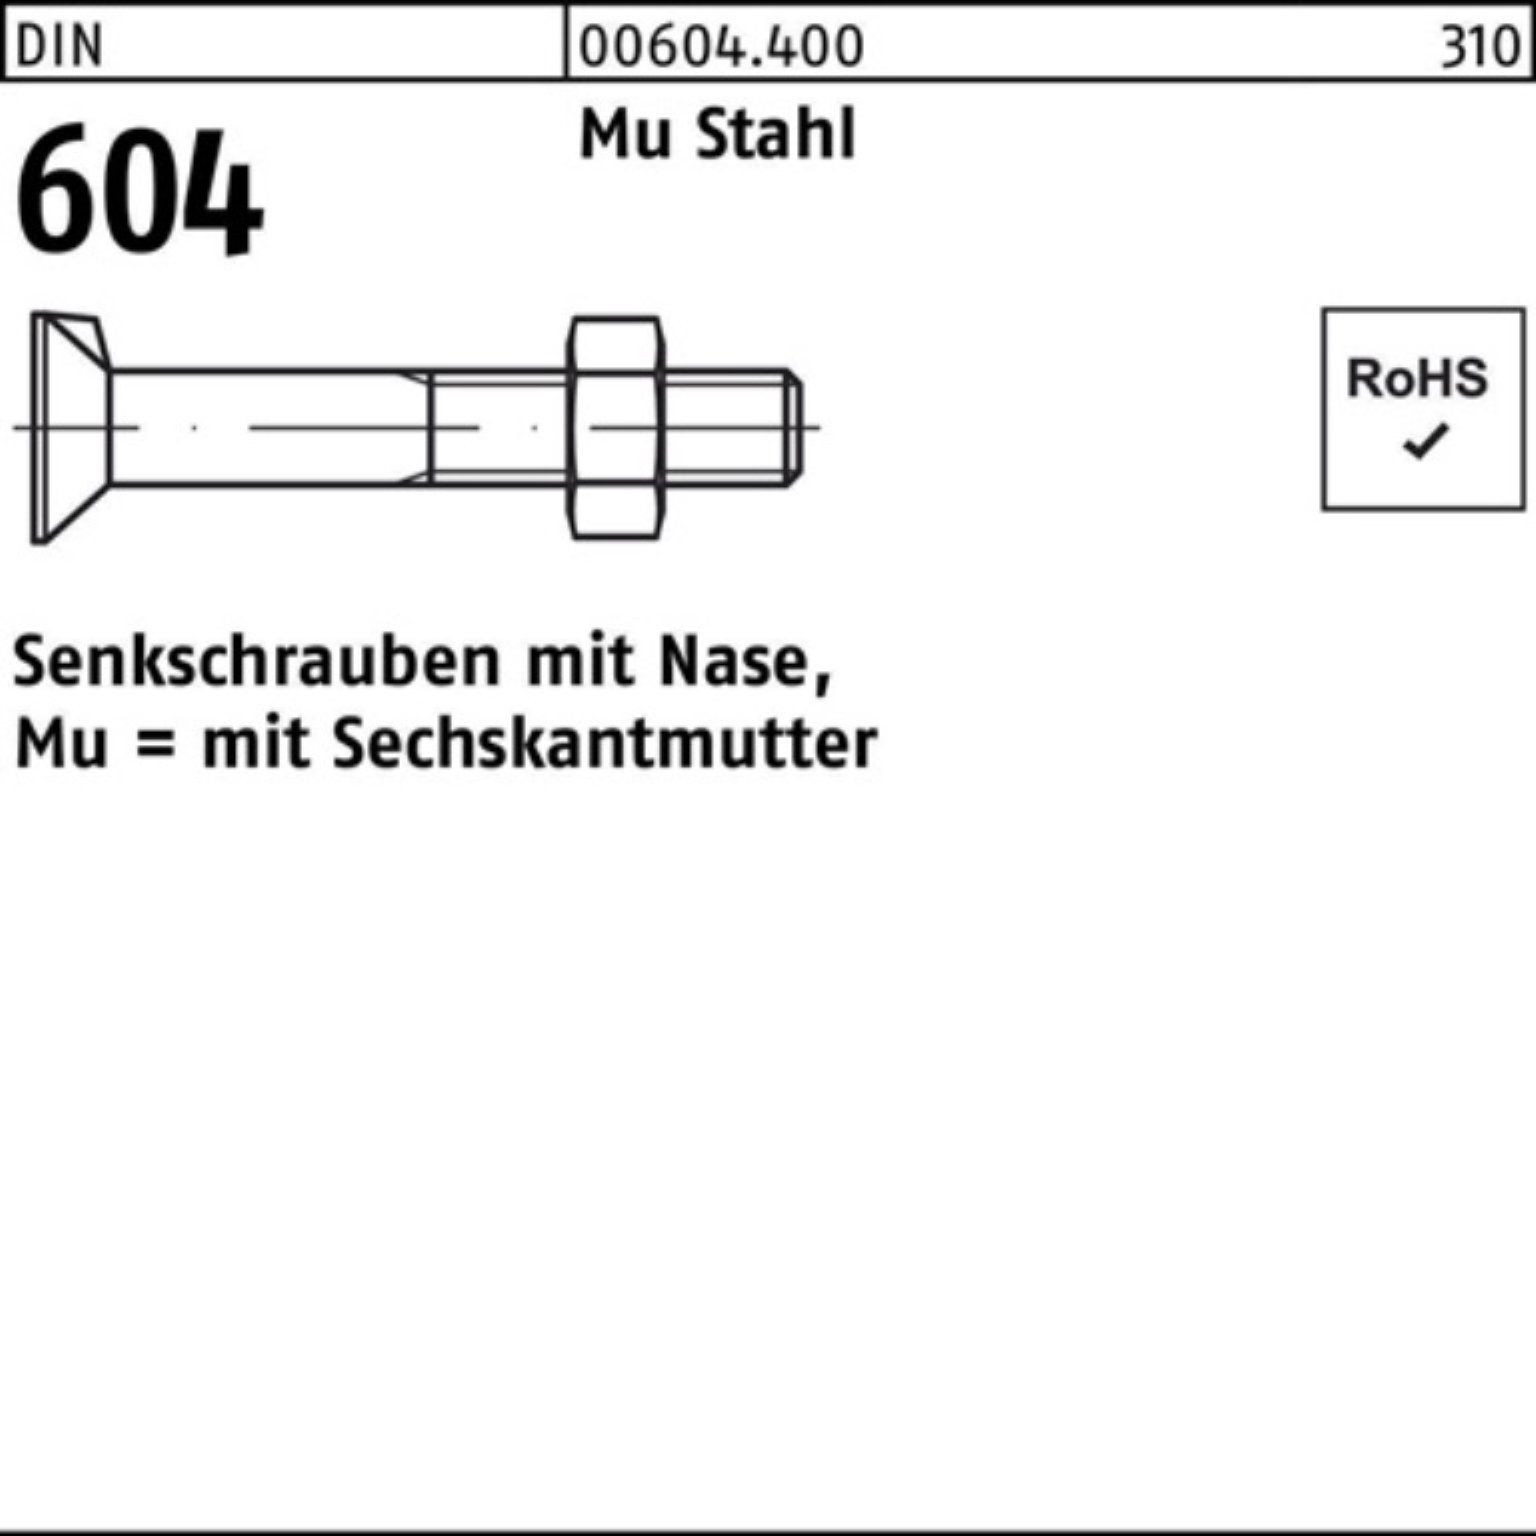 604 DIN 80 2 Senkschraube Nase/6-ktmutter Pack Stahl 100er Senkschraube Mu M16x Reyher 4.6